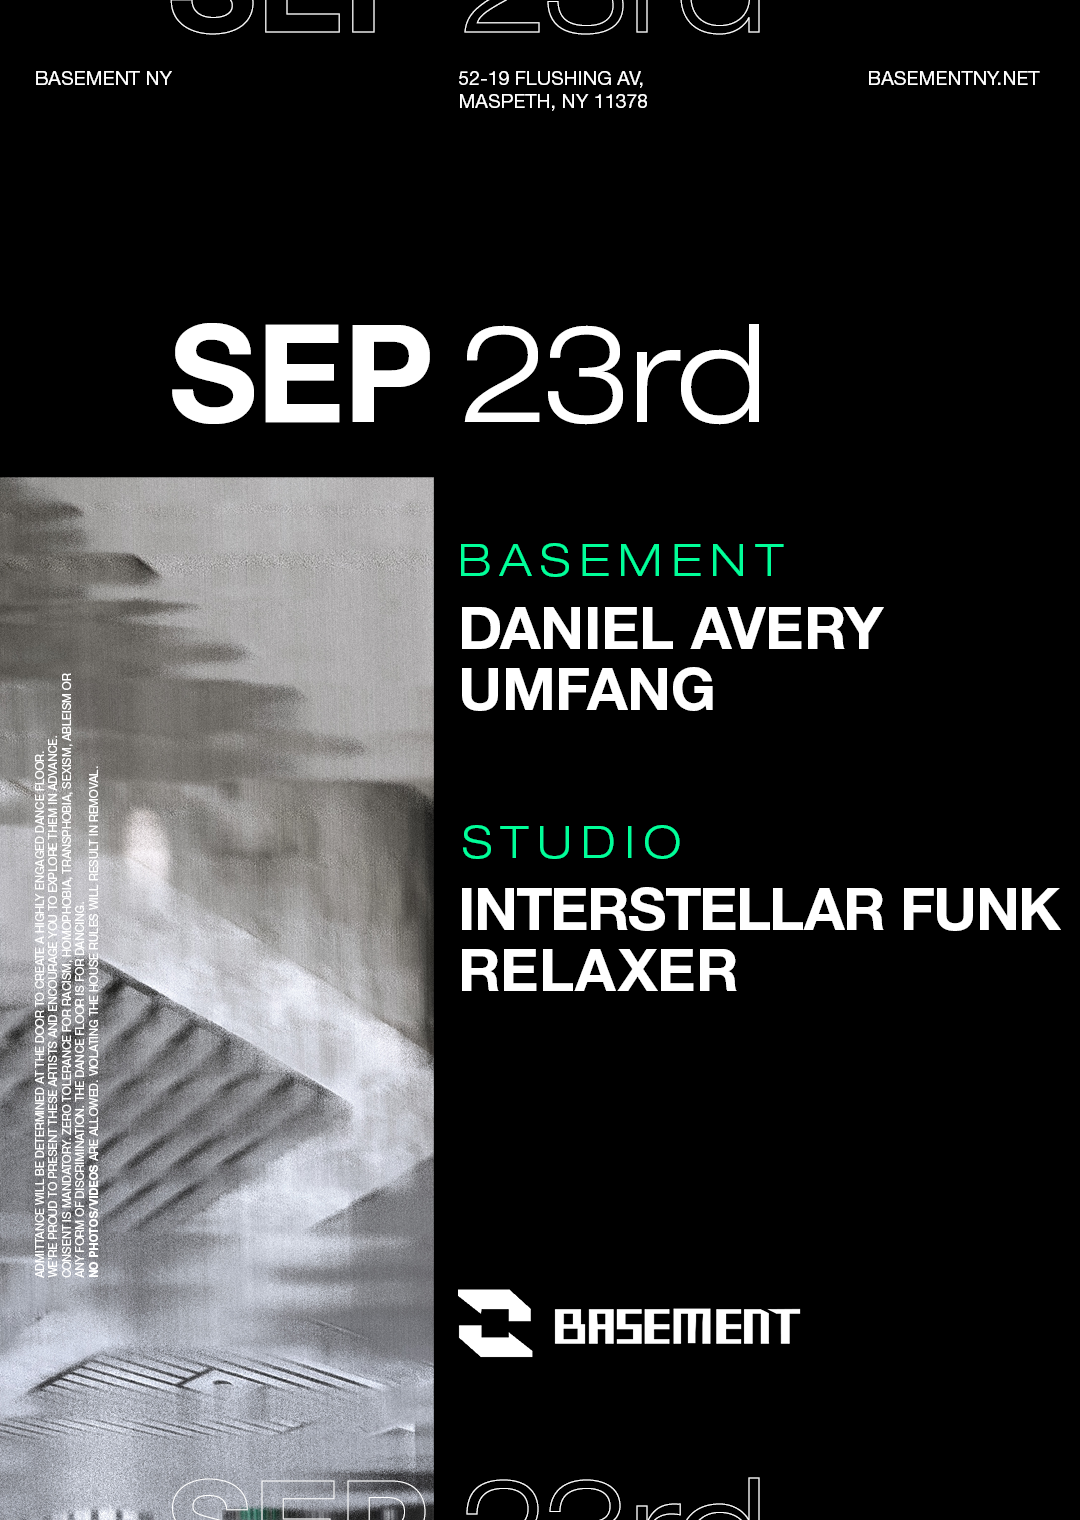 Daniel Avery / Umfang / Interstellar Funk / Relaxer - Flyer front